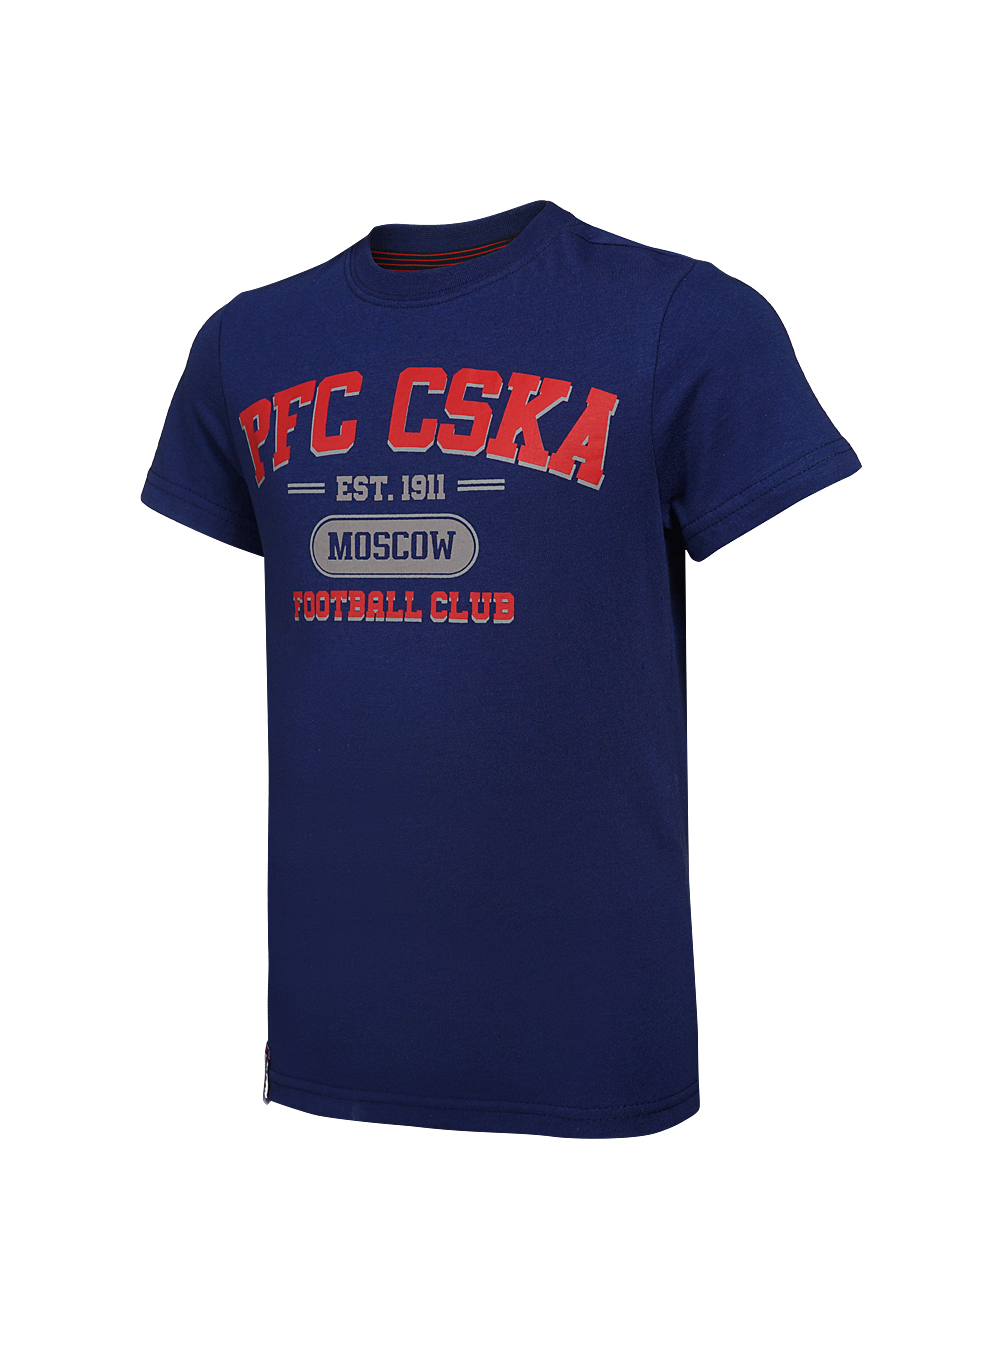 Купить Футболка детская  PFC CSKA Moscow синяя (134) по Нижнему Новгороду